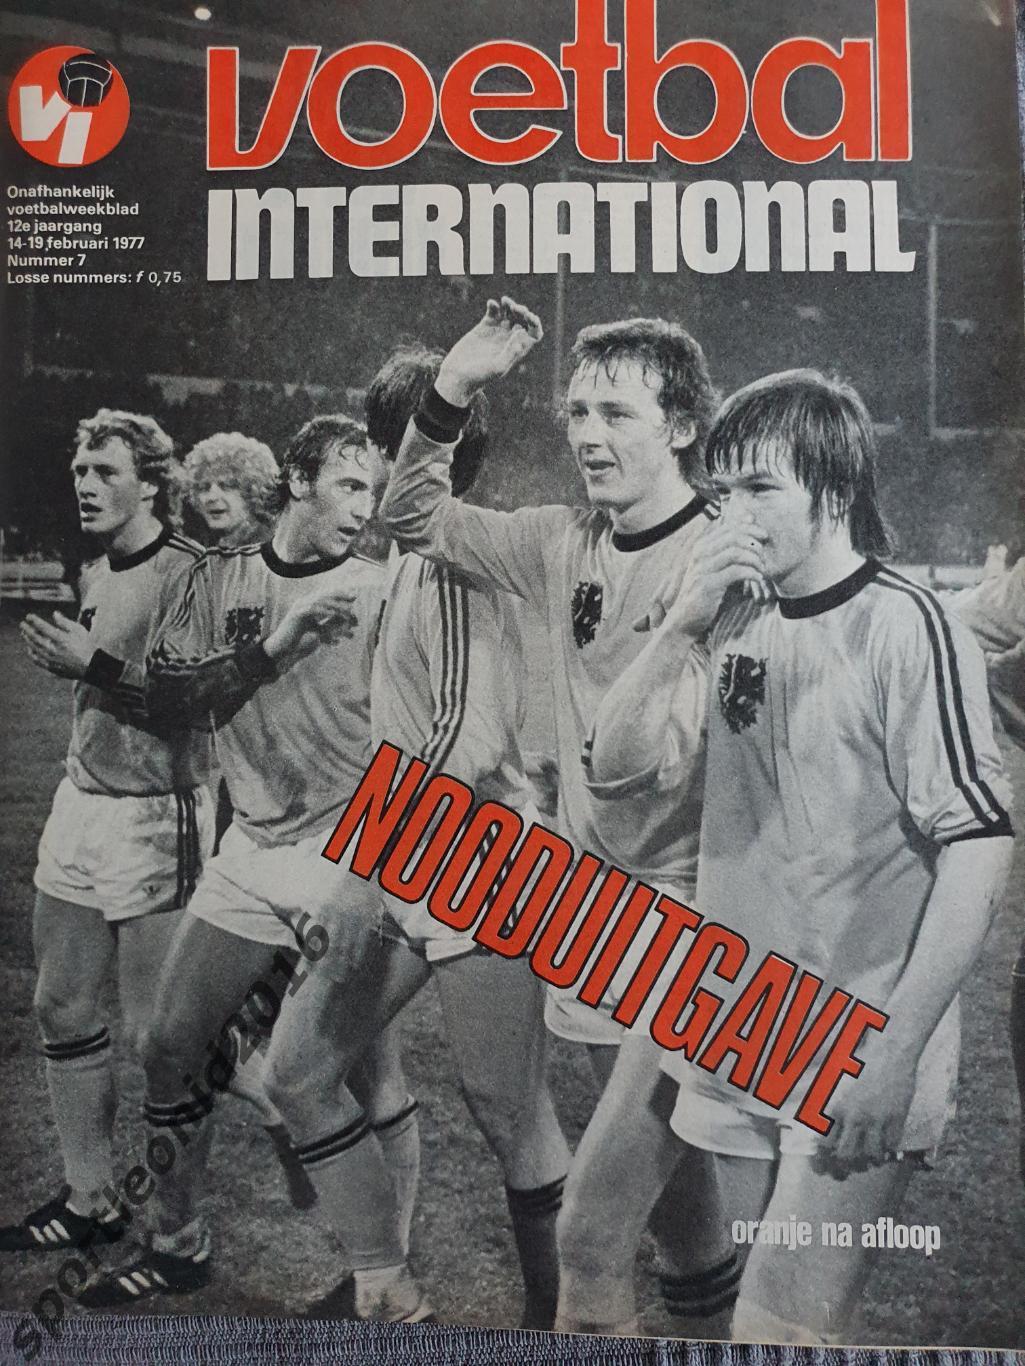 Voetbal International 1977 51 выпуск годовая подписка .2 4